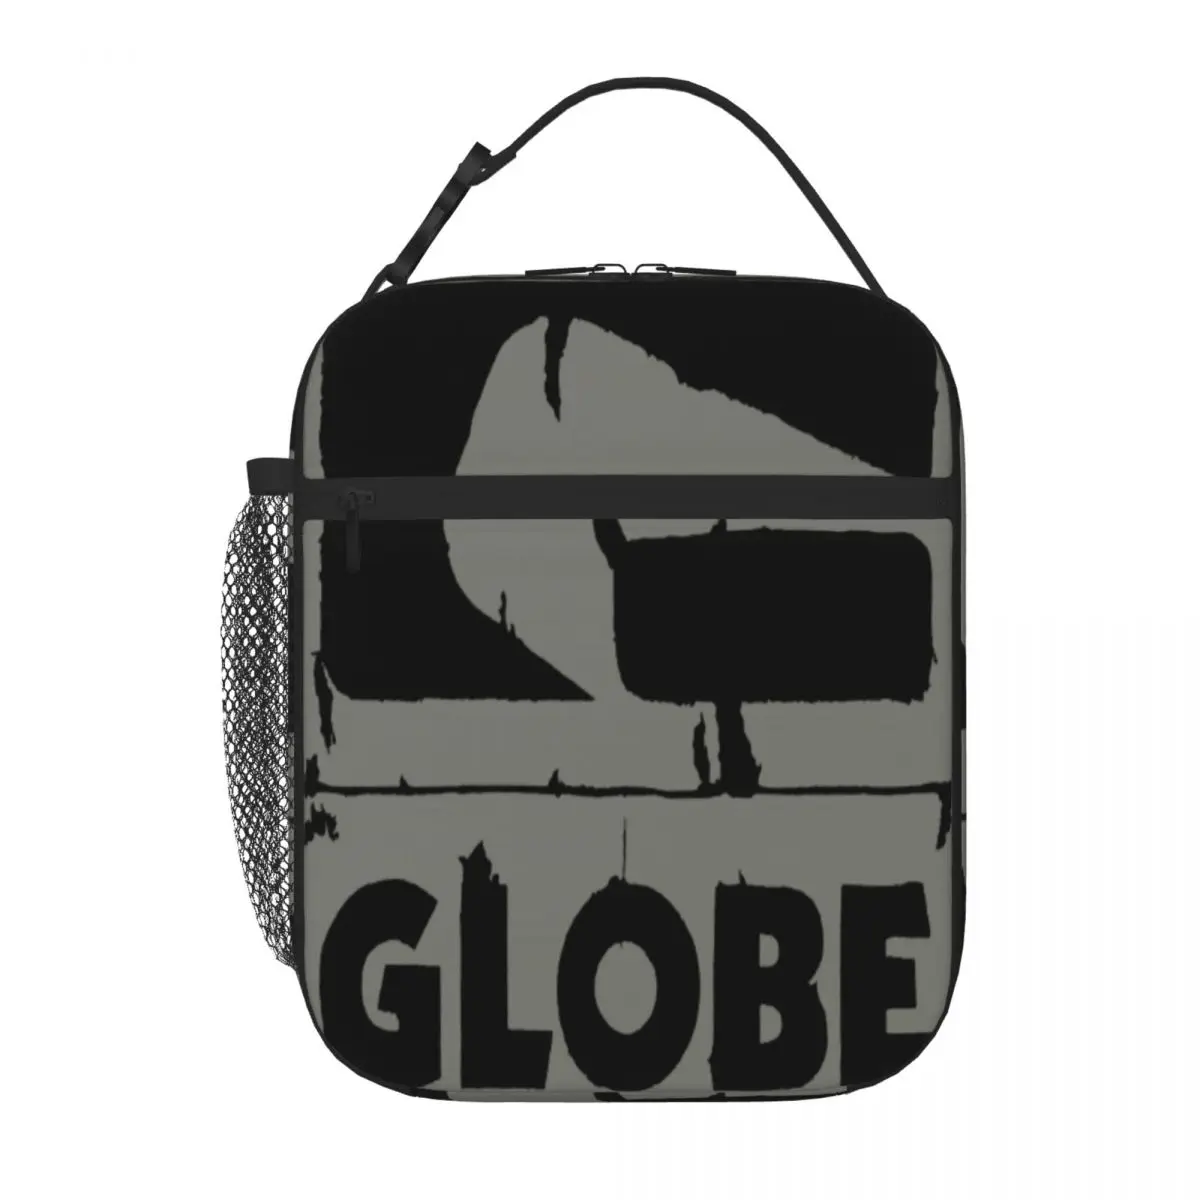 Globe Skate Batai taupūs Juodi maži pietūs Tote Kawaii krepšys Pietų krepšiai Krepšiai Terminis krepšys Moteris